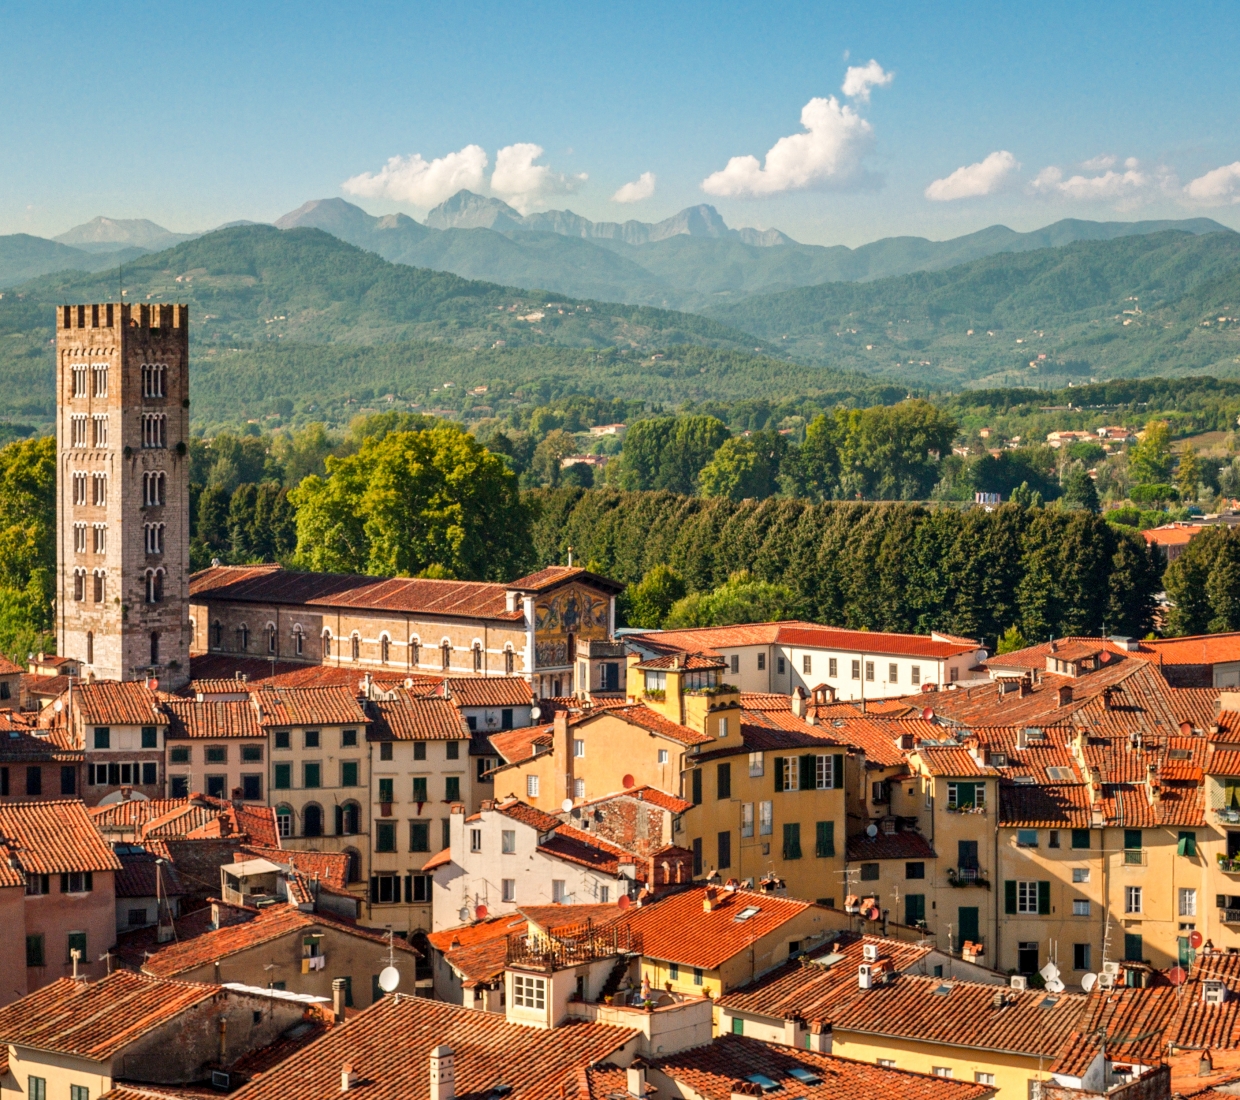 Hoteles con encanto Lucca hoteles de lujo y casas rurales